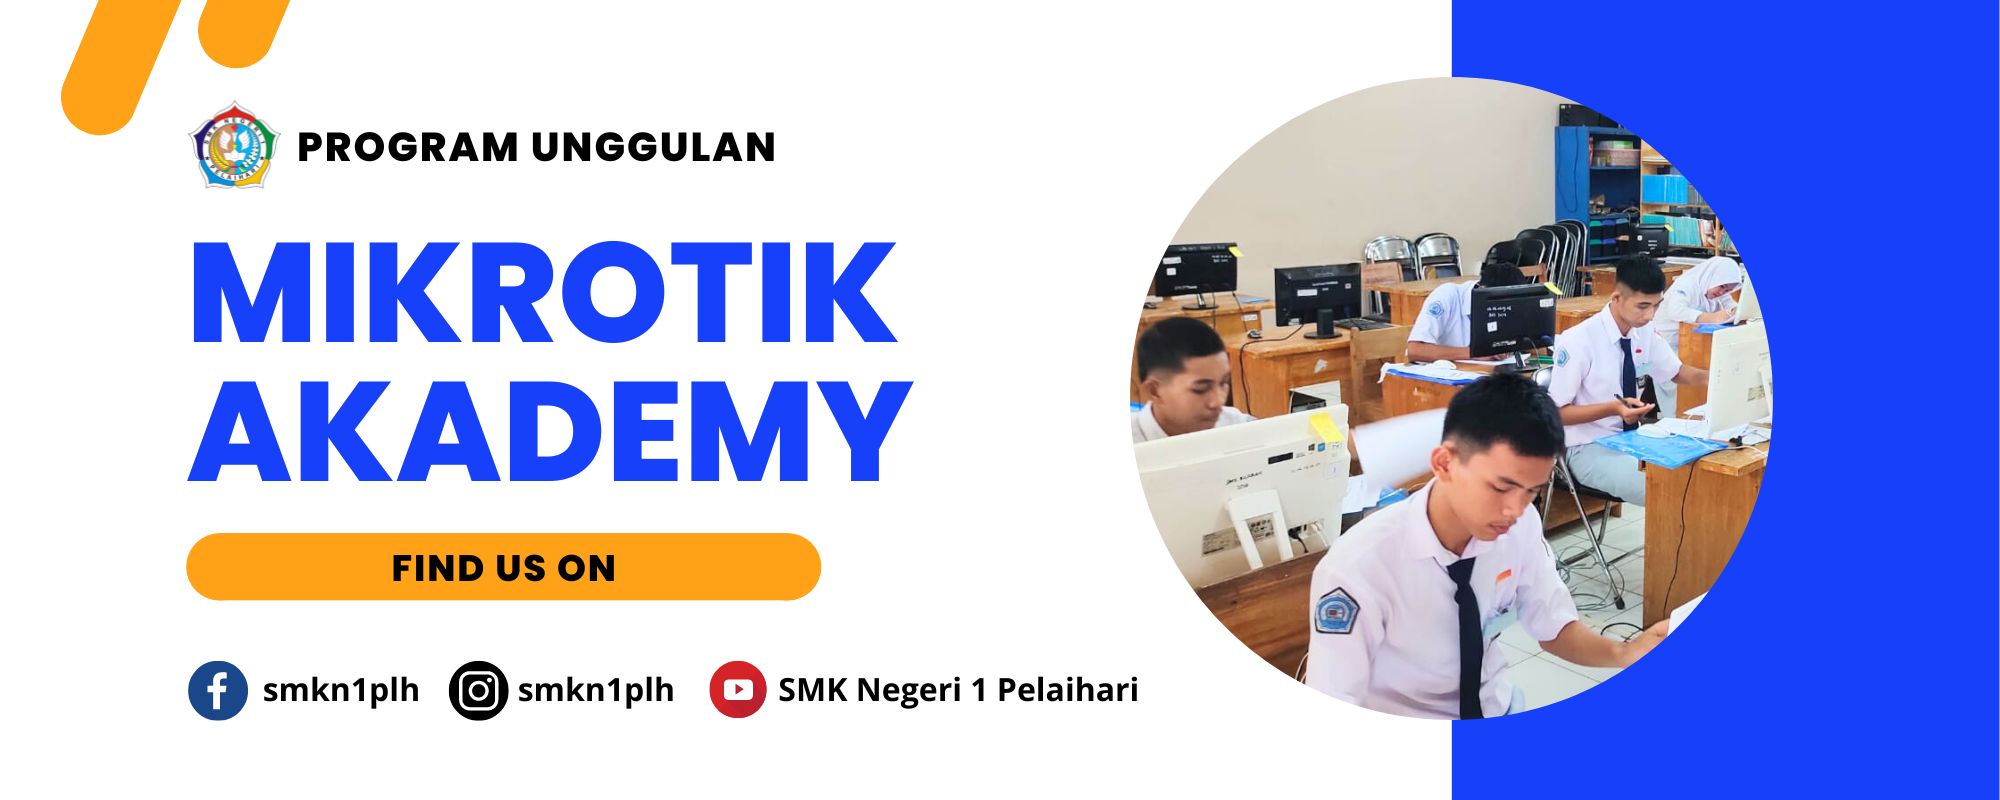 Program MikroTik Academy